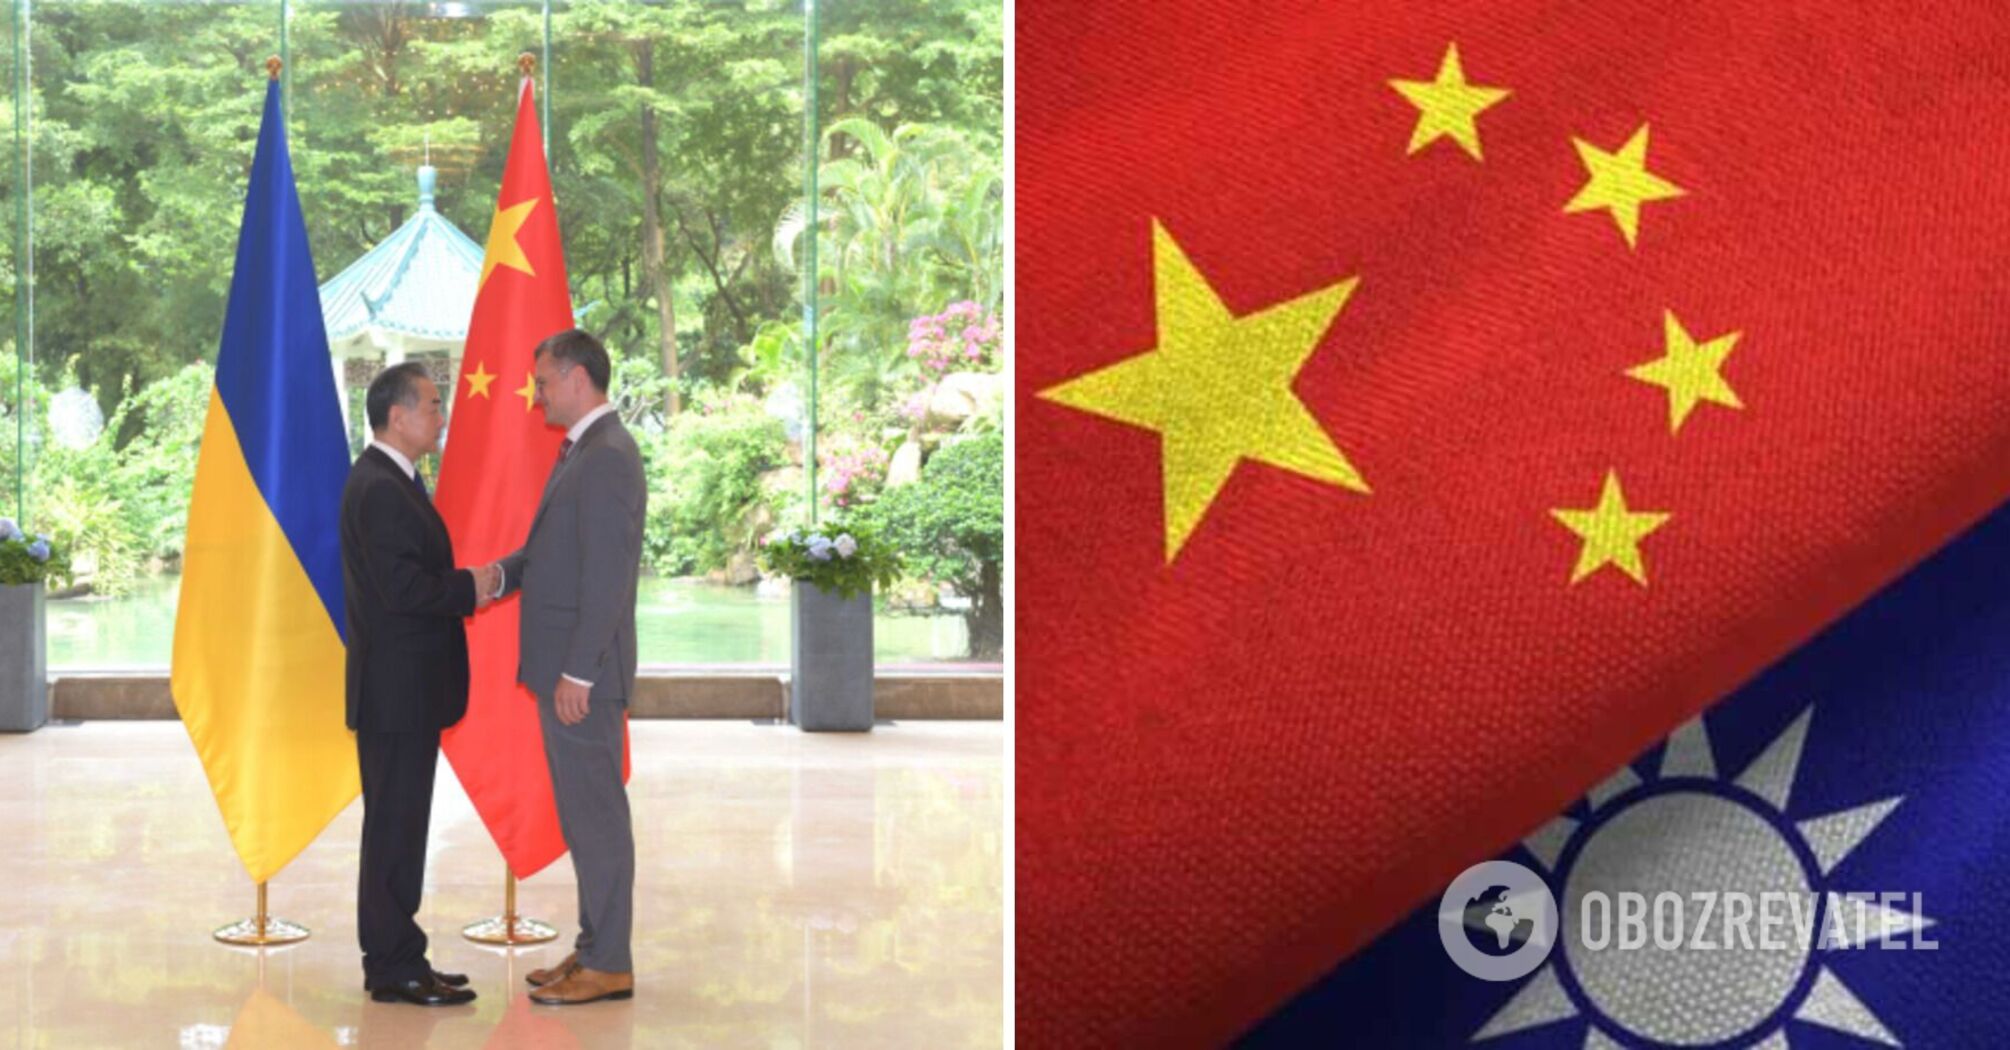 Chiny twierdzą, że Ukraina popiera stanowisko Pekinu w sprawie Tajwanu: nowe szczegóły negocjacji